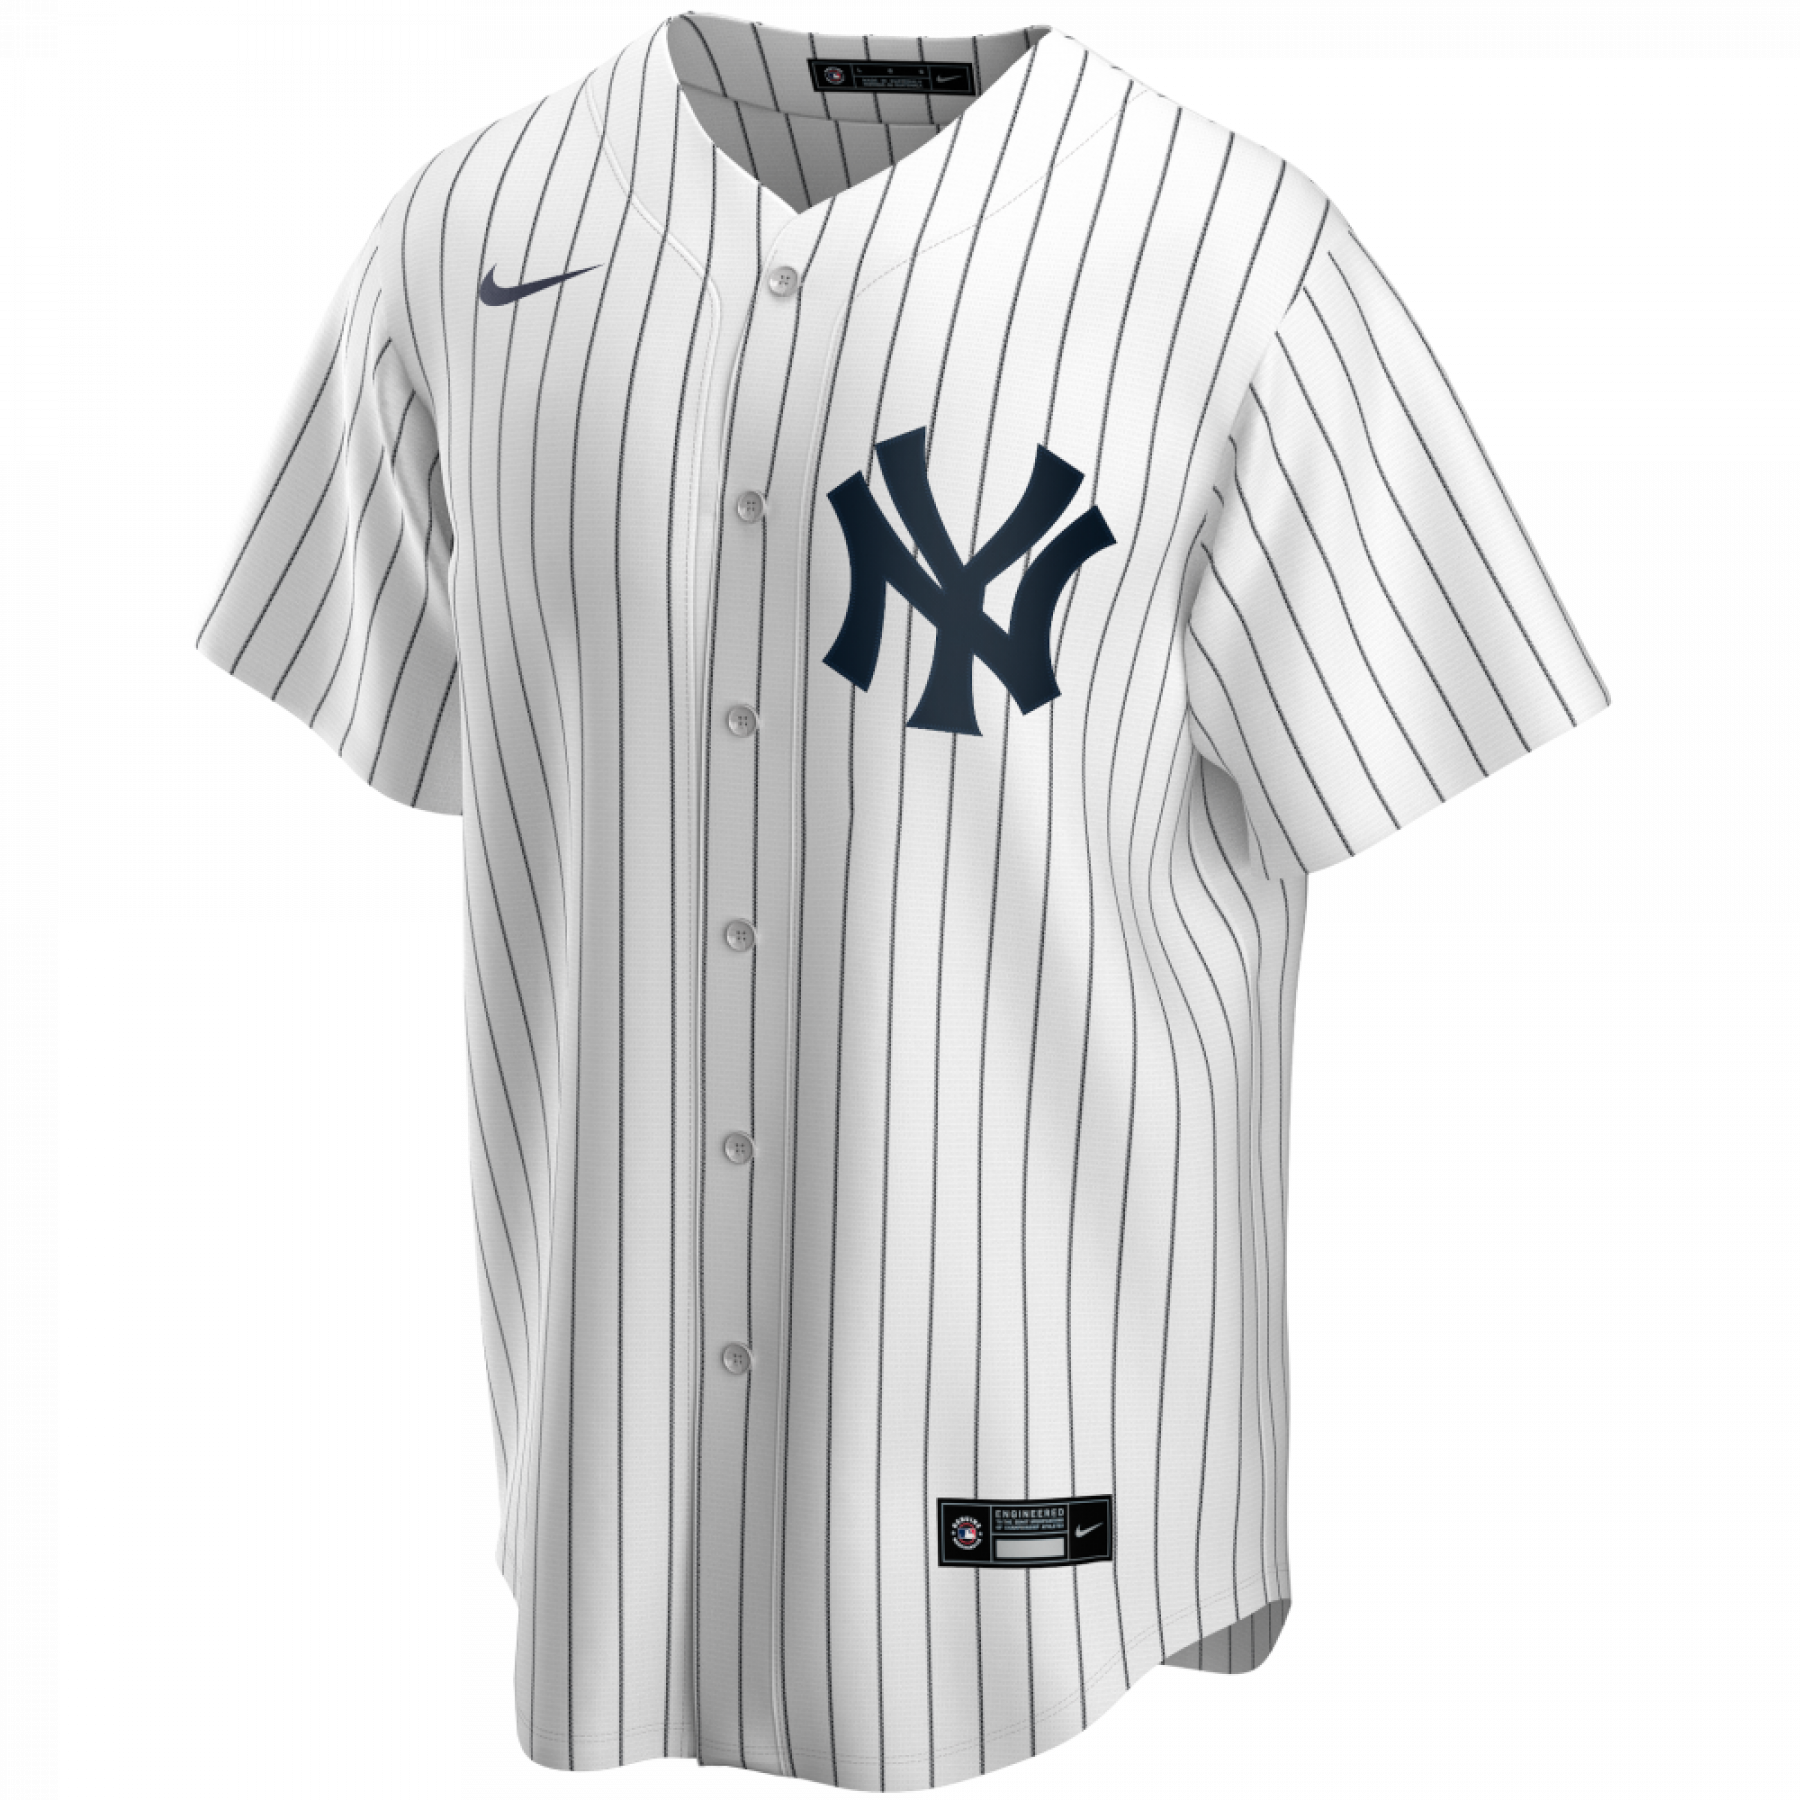 Maglia ufficiale Replica New York Yankees